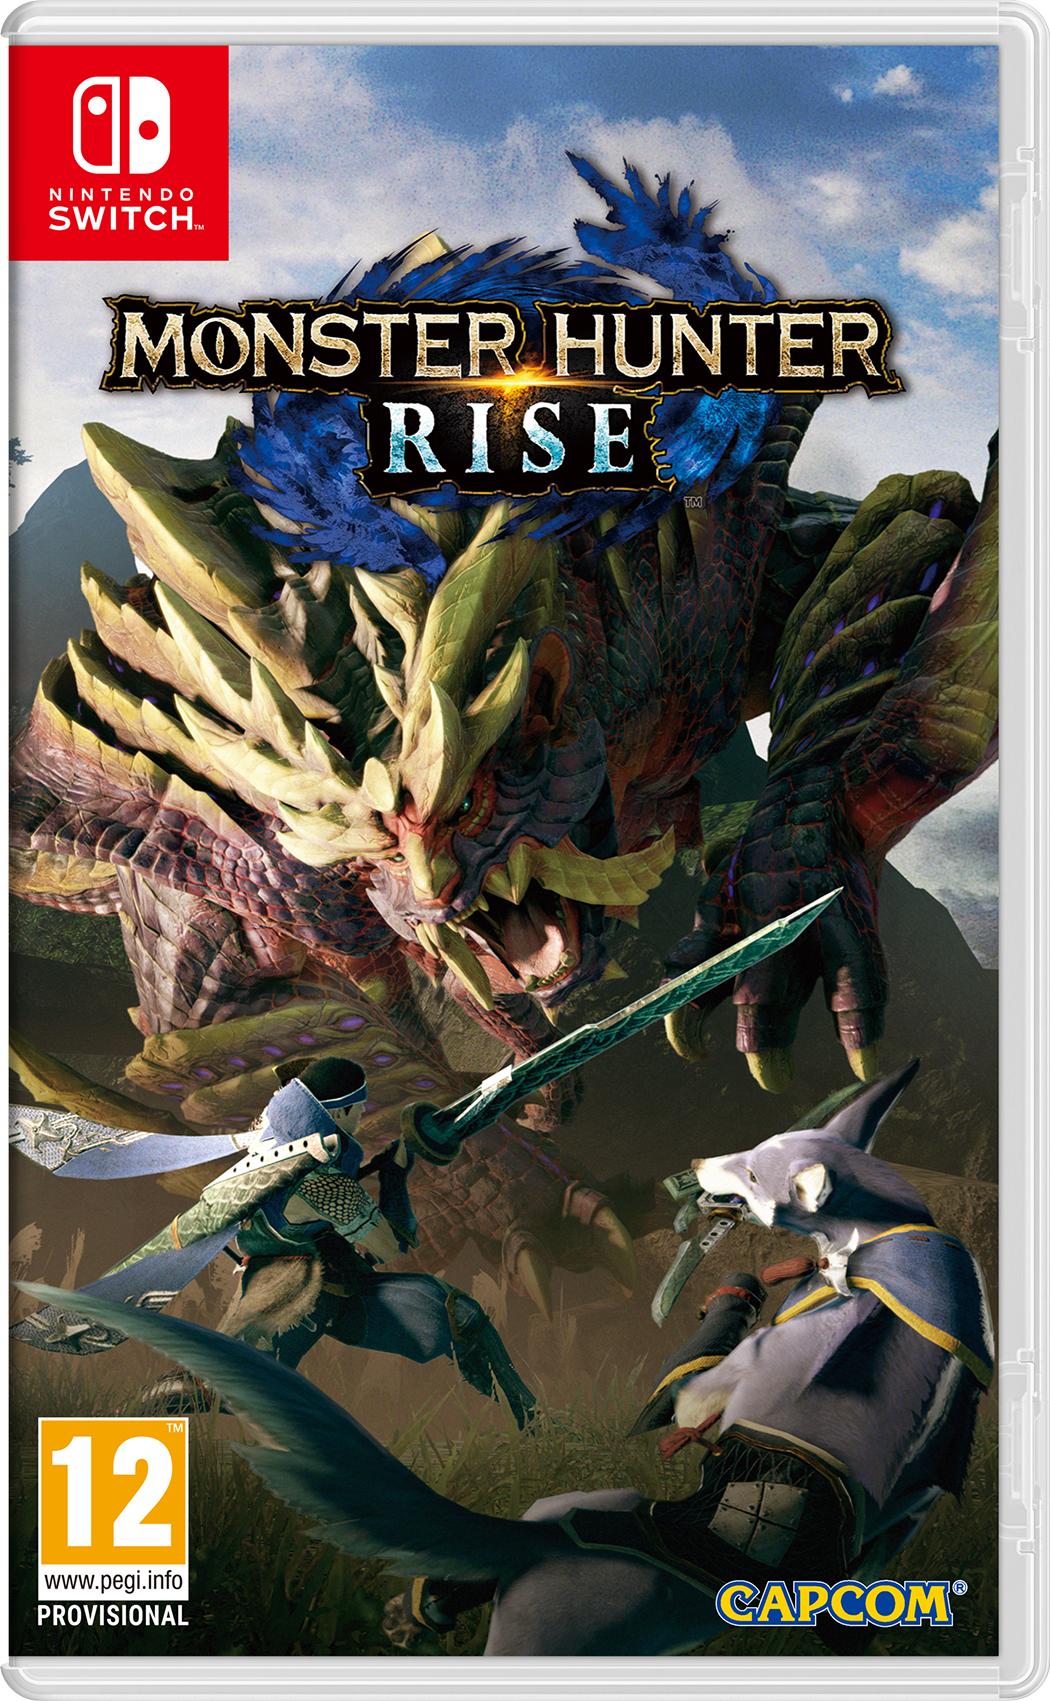 Monster Hunter Rise, Capcom